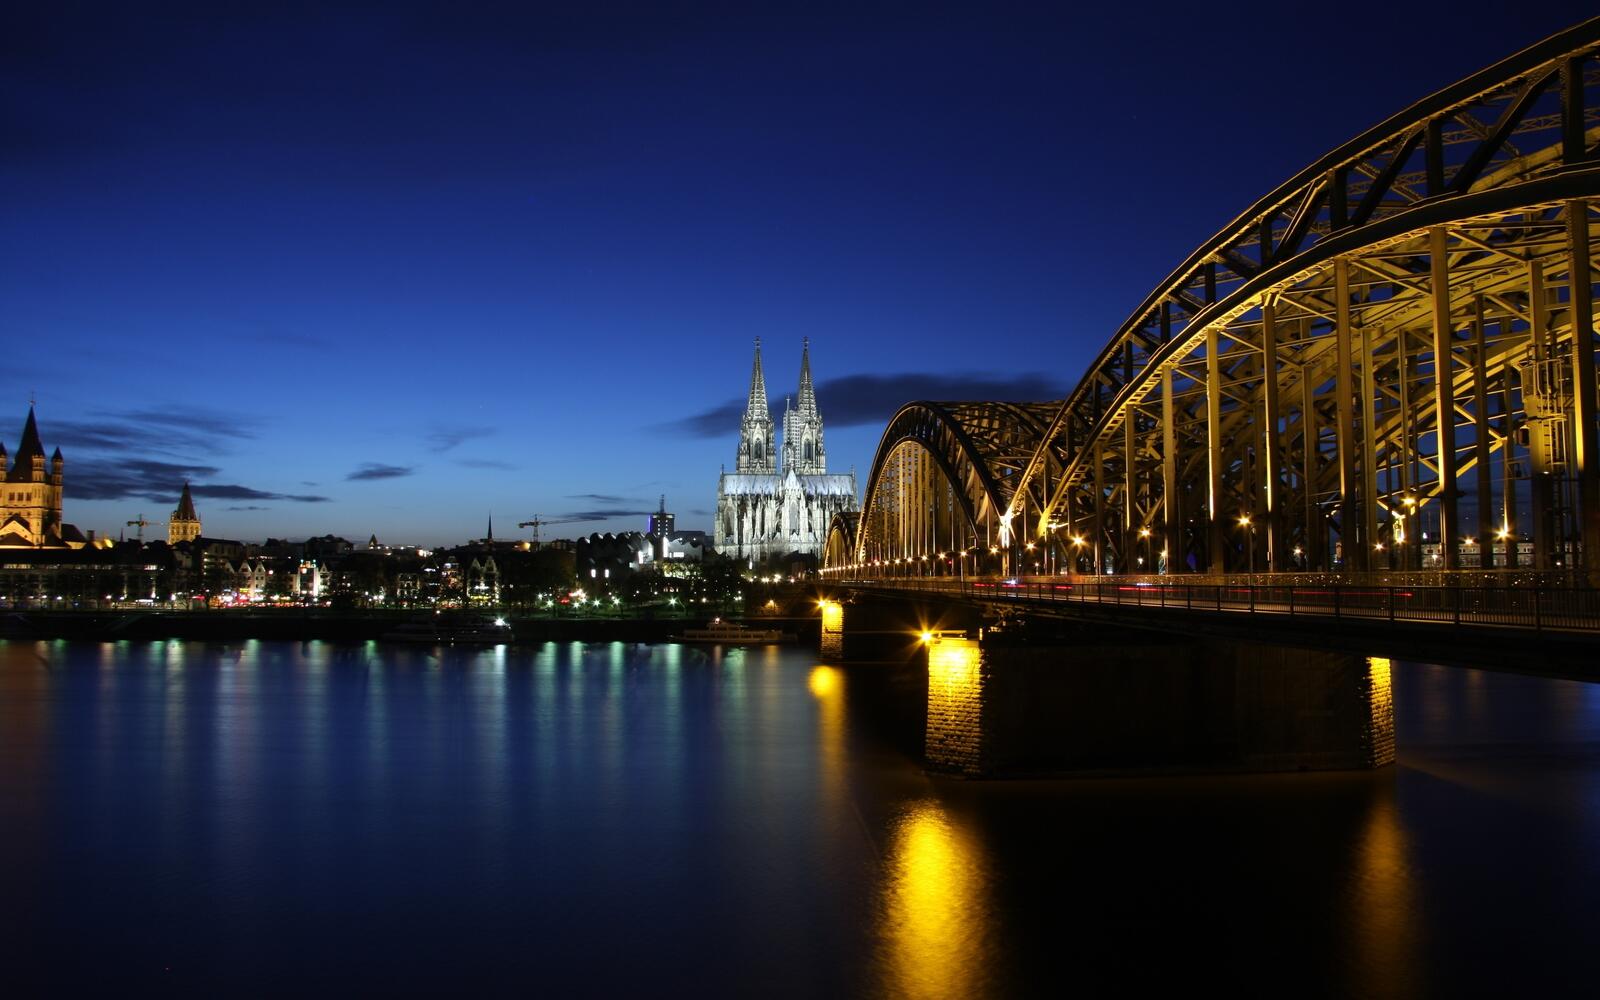 Бесплатное фото Ночной мост через реку в Германии